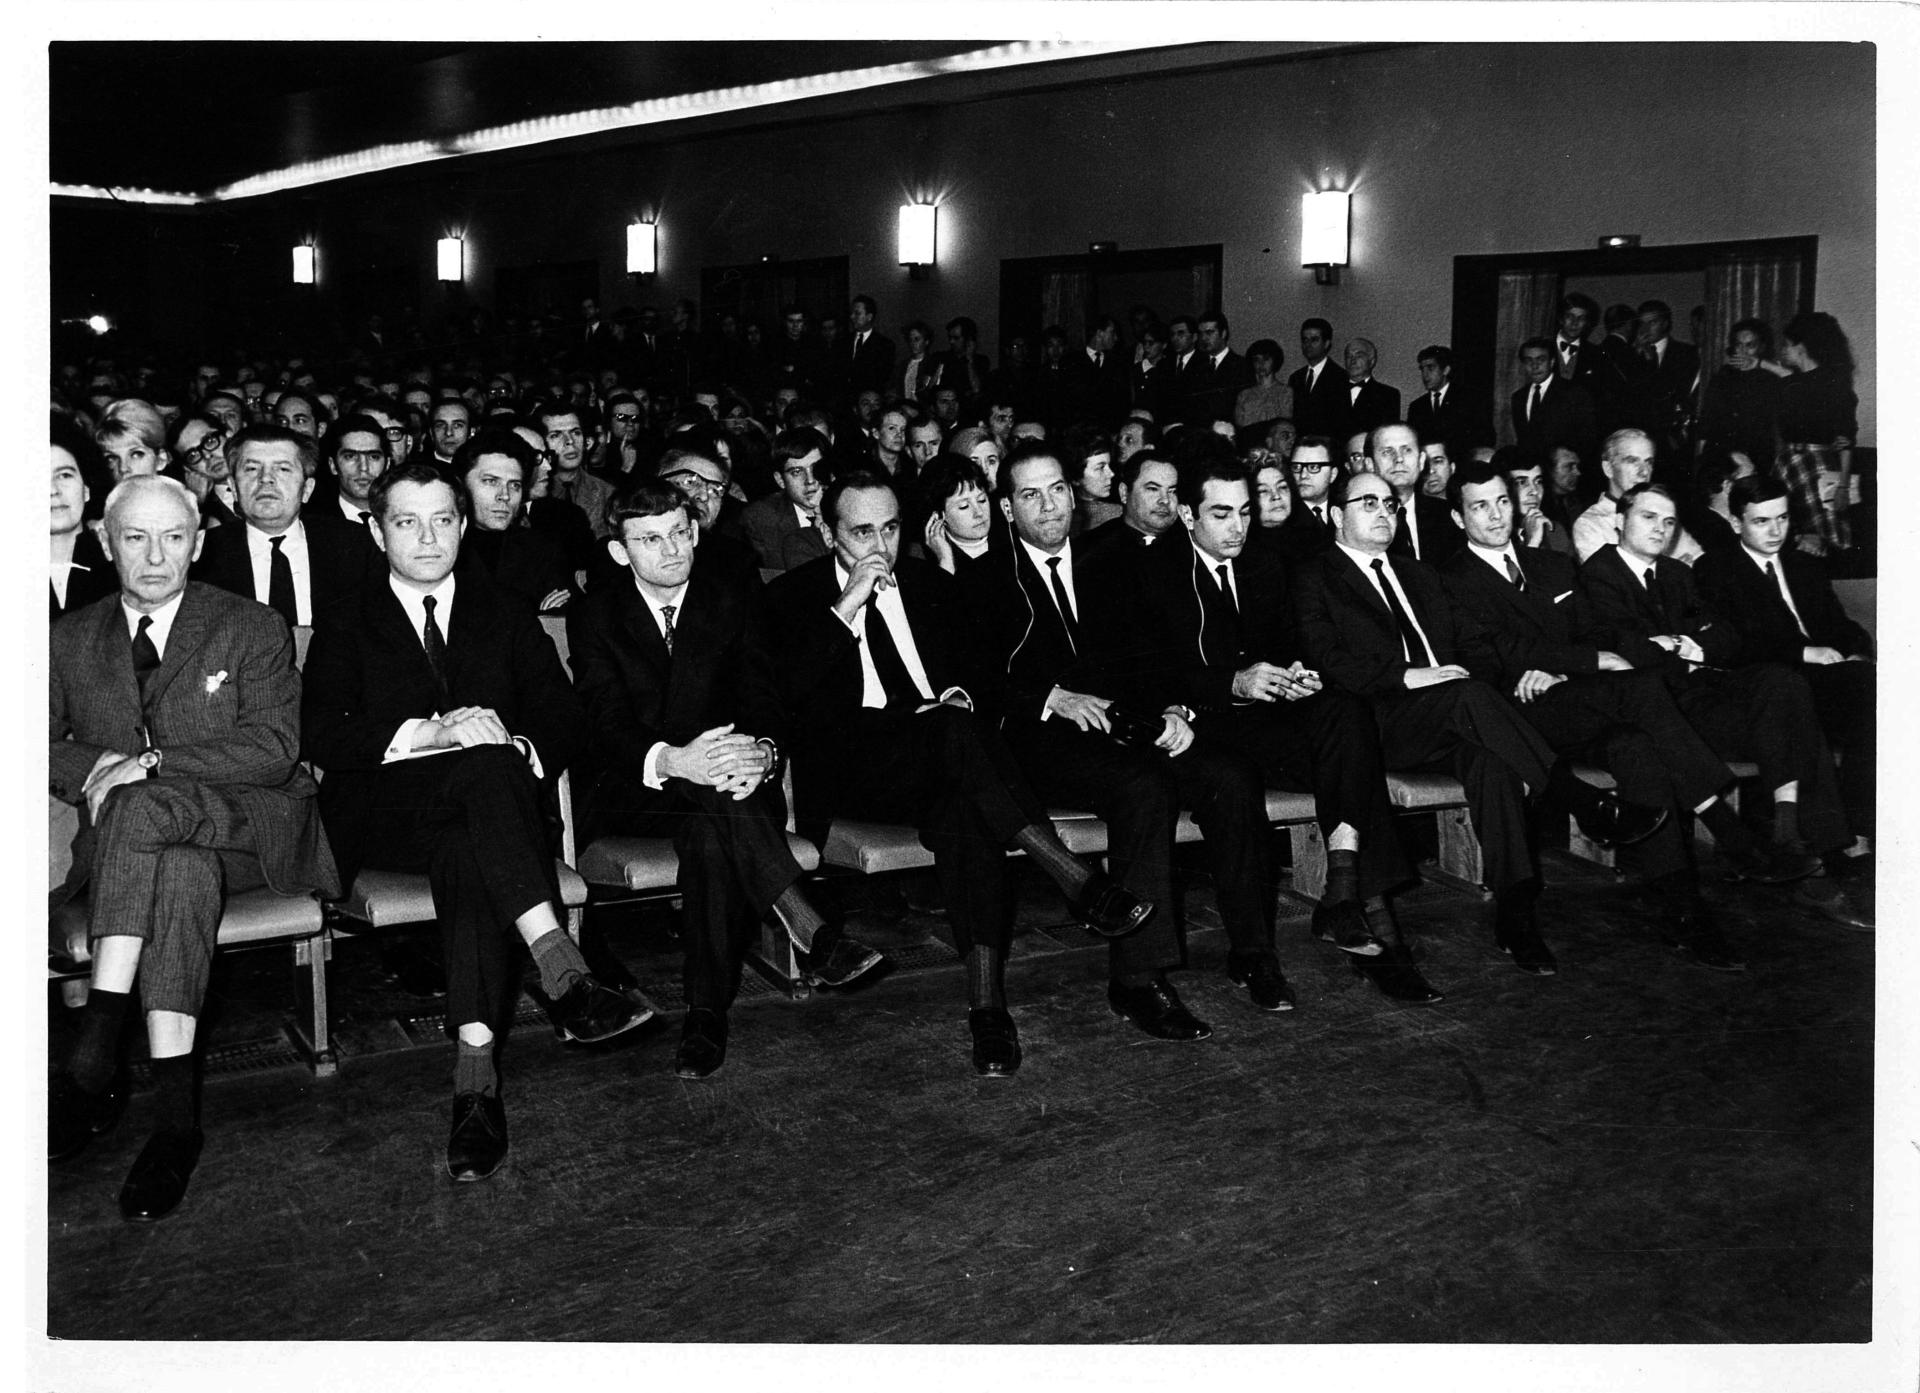 Schwarz-Weiß-Foto auf die ersten Reihen in einem voll besetzten Kinosaal. In der ersten Reihe sitzen ausschließlich Männer in dunklen Anzügen und weißen Hemden mit Krawatte.